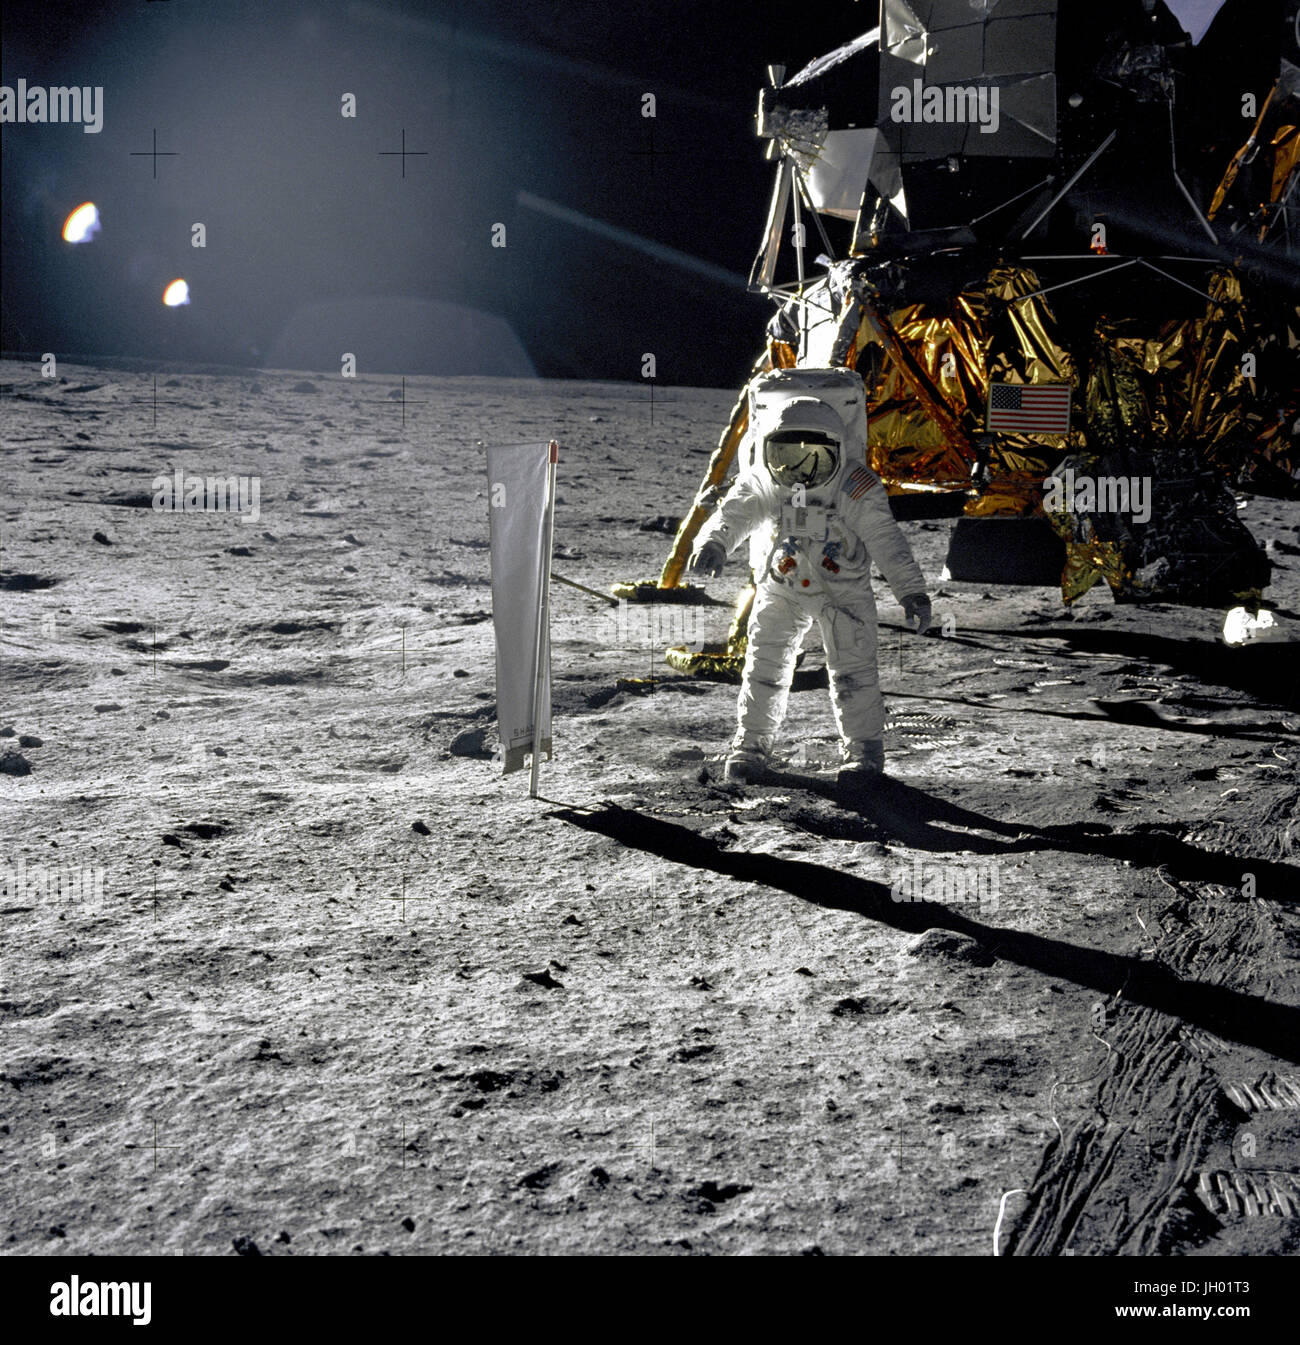 Aldrin neben Solar-Wind-Experiment. Astronaut Edwin E. Aldrin, Jr., Pilot der Mondlandefähre, wird während der Apollo 11 Extravehicular Activity (EVA) auf dem Mond fotografiert. Im Hintergrund Rechte ist die Mondfähre "Eagle." Aldrin des Rechts ist der Sonnenwind Zusammensetzung (SWC) Experiment bereits bereitgestellt. Dieses Foto wurde von Neil A. Armstrong mit einem 70 mm lunar Surface-Kamera aufgenommen. Fotograf: NASA Edwin E. Buzz Aldrin Stockfoto